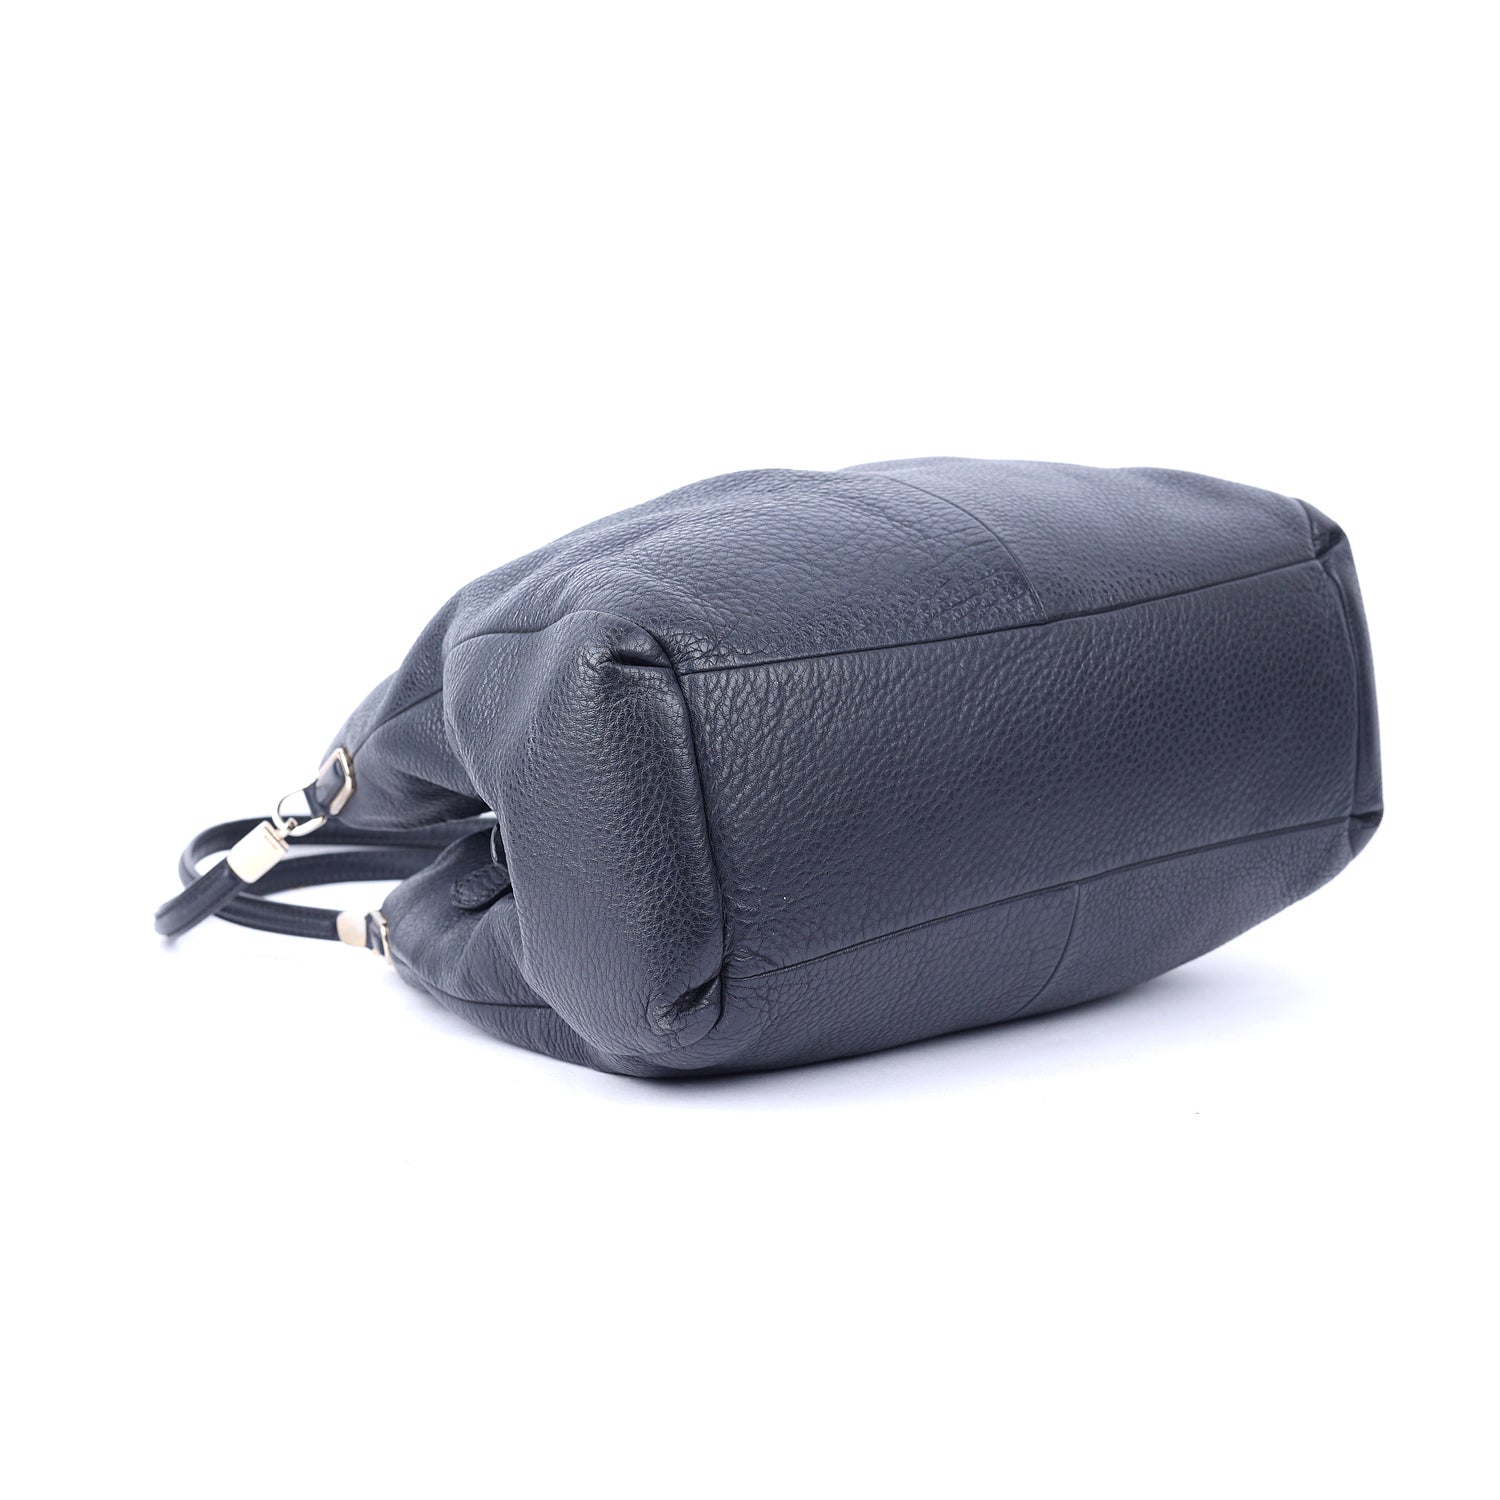 Leather Edie Shoulder Bag